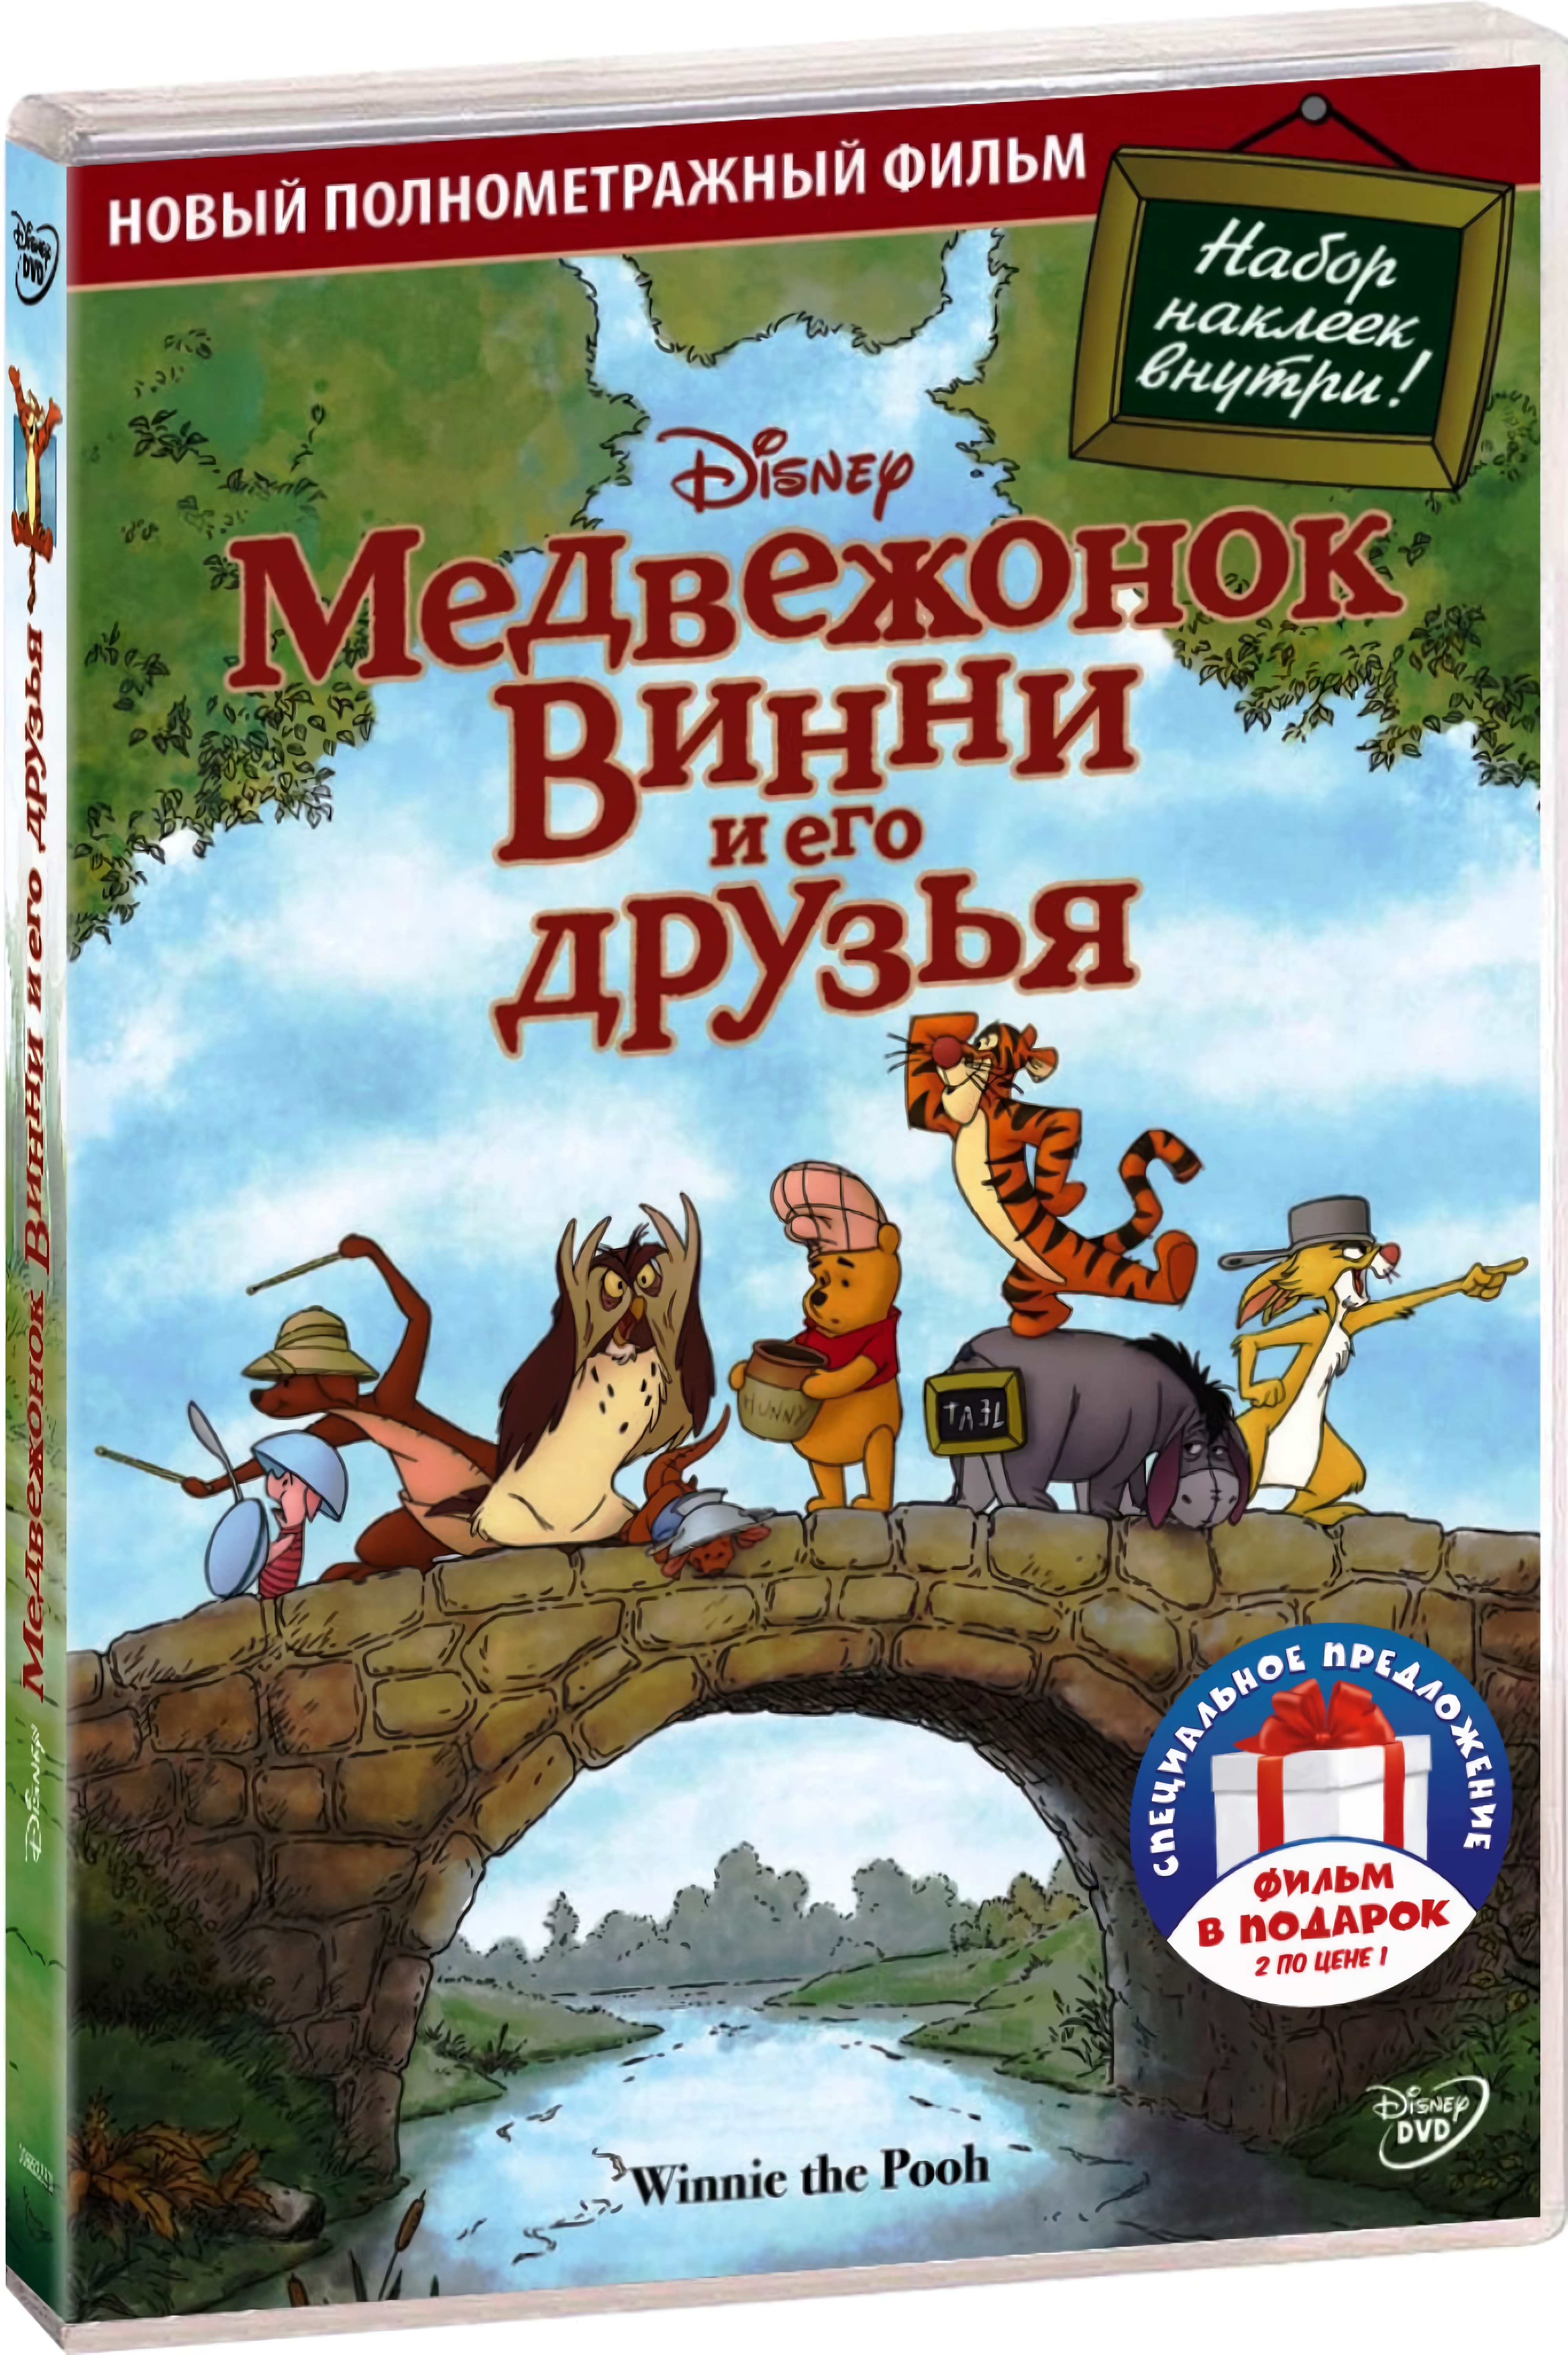 Медвежонок Винни и его друзья / Коллекция короткометражных мультфильмов Disney (2 DVD)